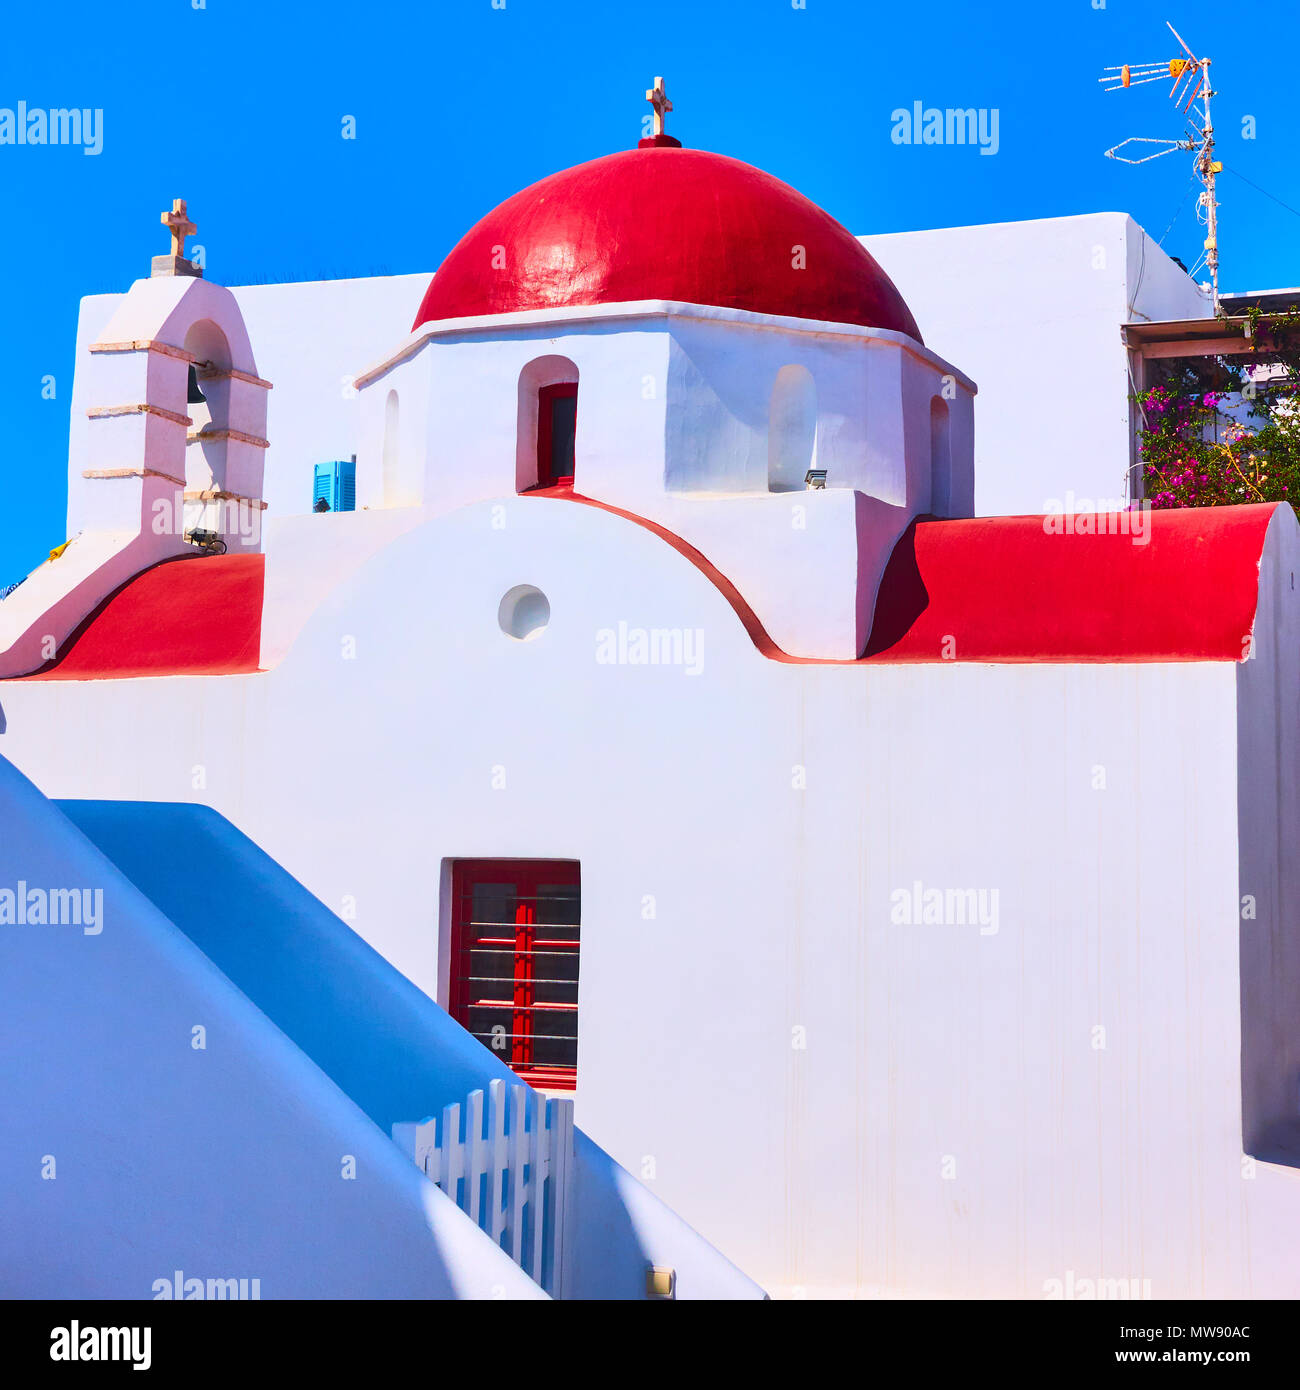 Eglise grecque avec dôme rouge dans l'île de Mykonos, Grèce Banque D'Images